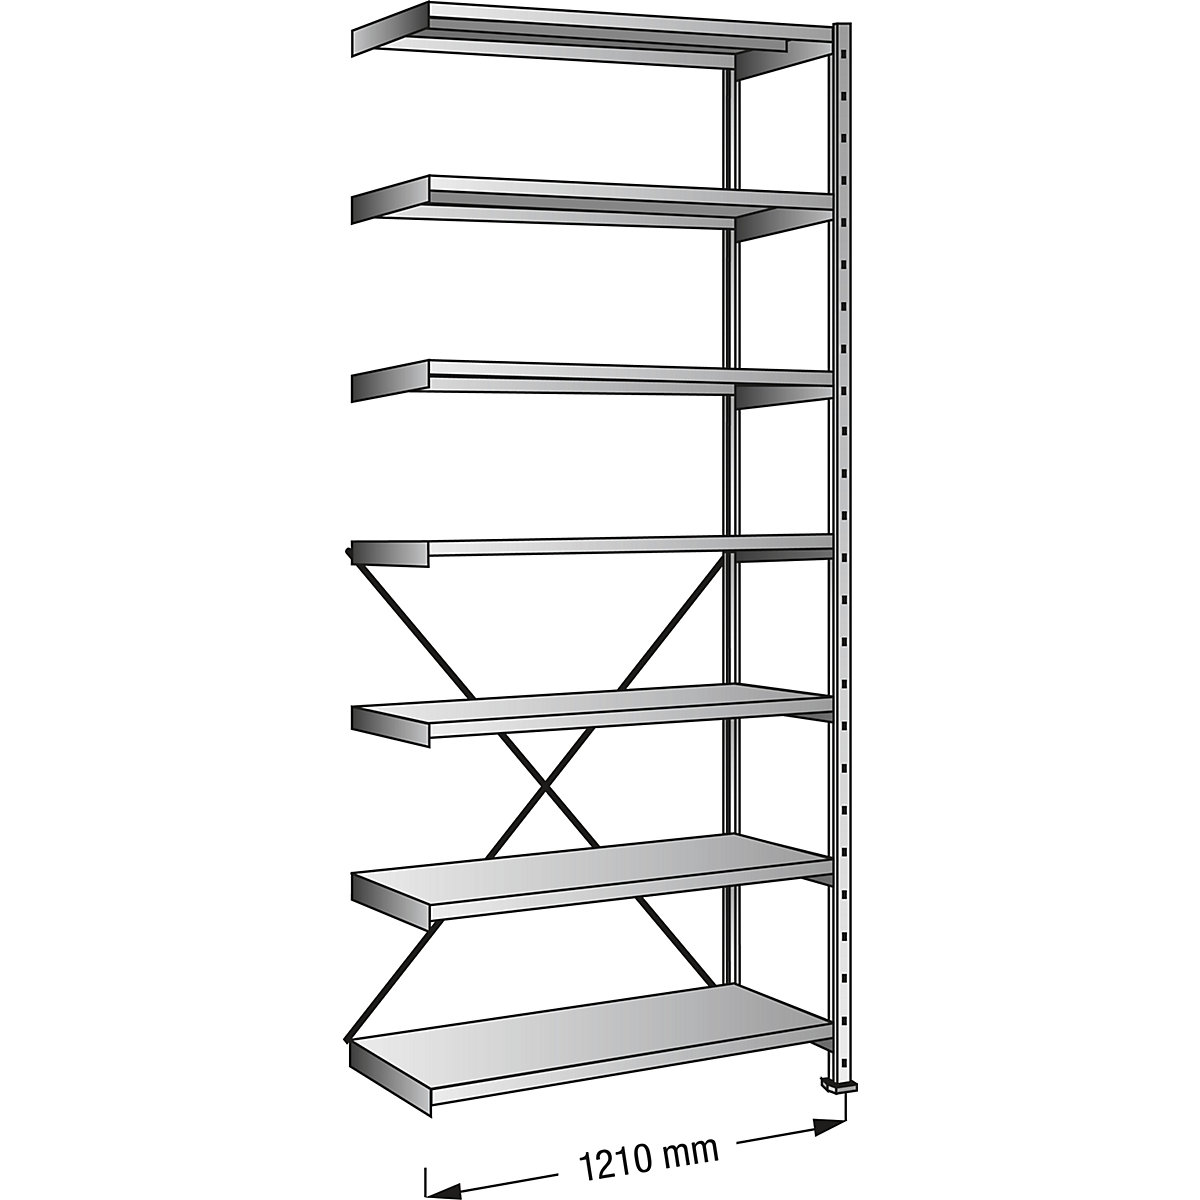 Boltless shelving unit, zinc plated, 7 shelves, height 2640 mm, shelf width 1200 mm, depth 300 mm, extension shelf unit